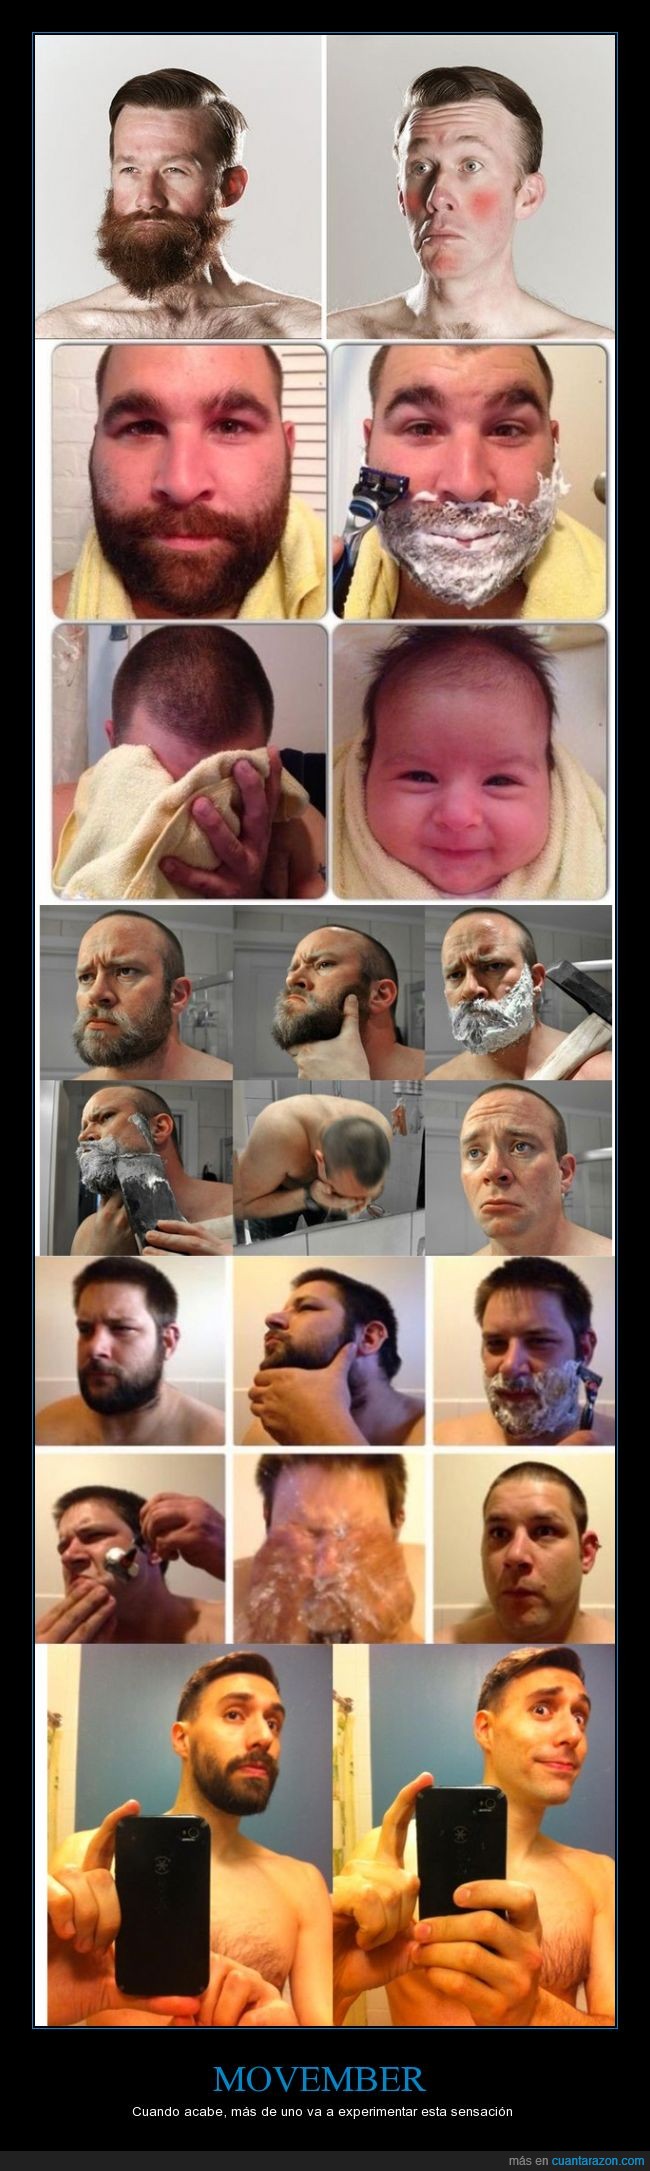 afeitar,aniñado,barba,bebe,joven,movember,niño,pequeño,rudo